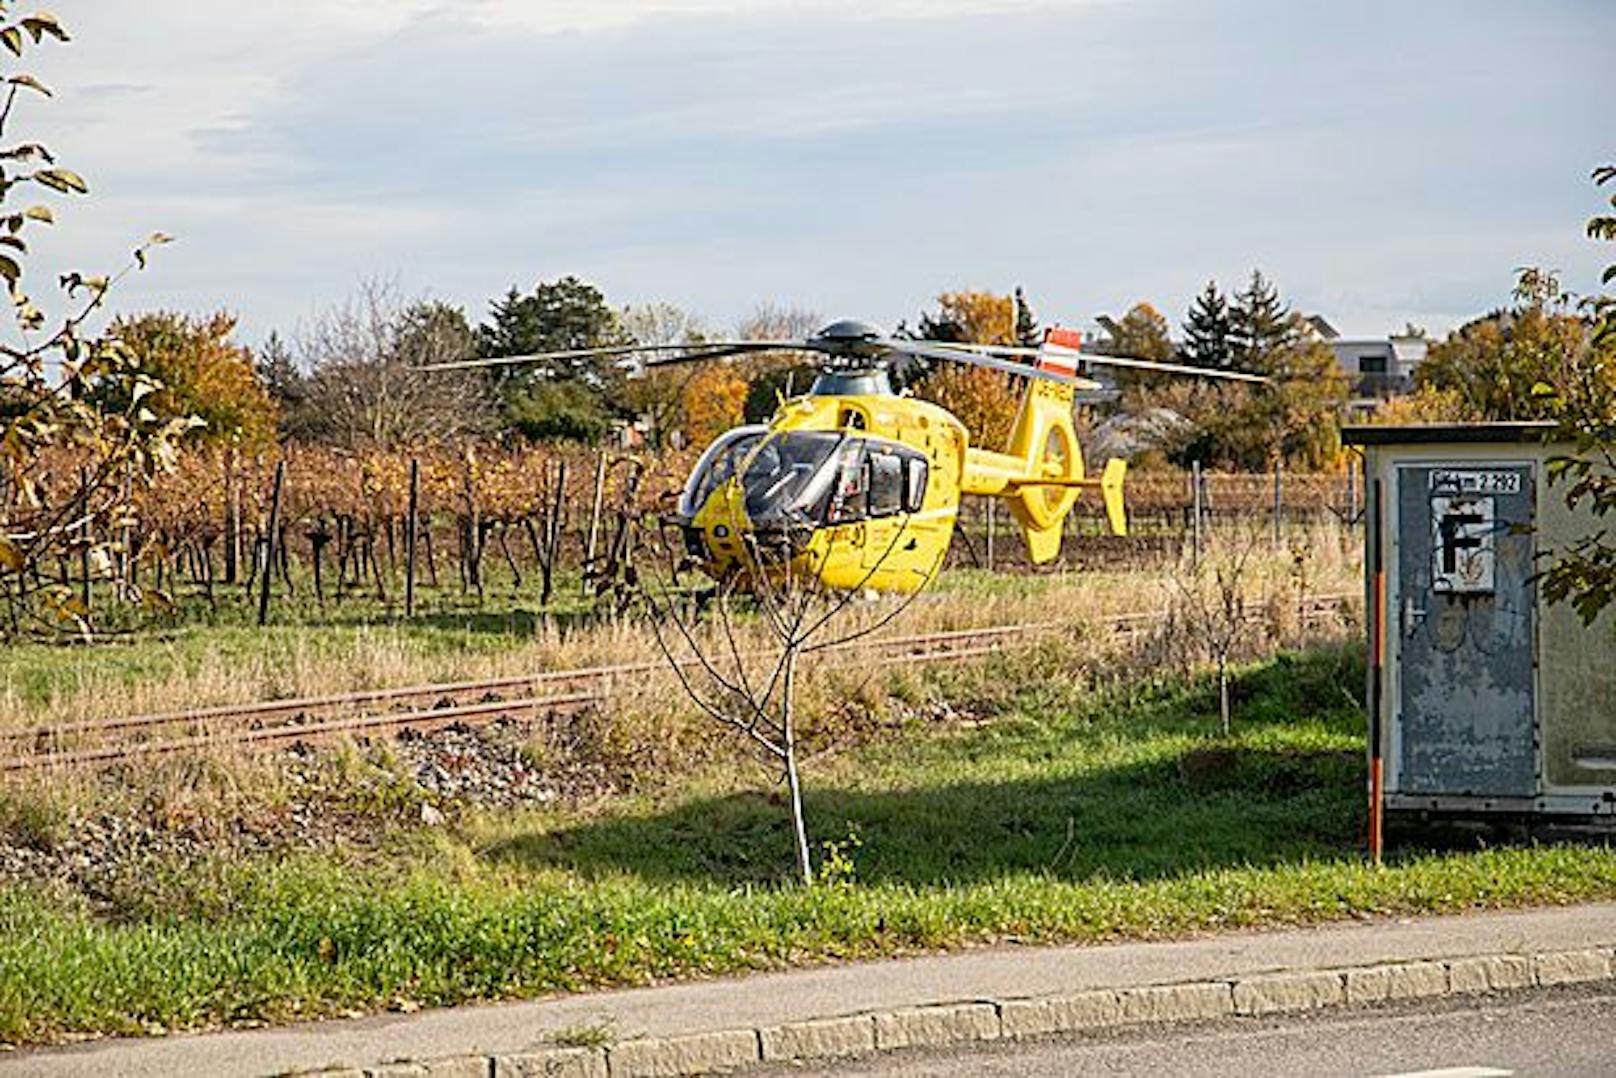 Zwei der verletzten Arbeiter wurden per Hubschrauber, der dritte mittels Rettungswagen in Spitäler transportiert.